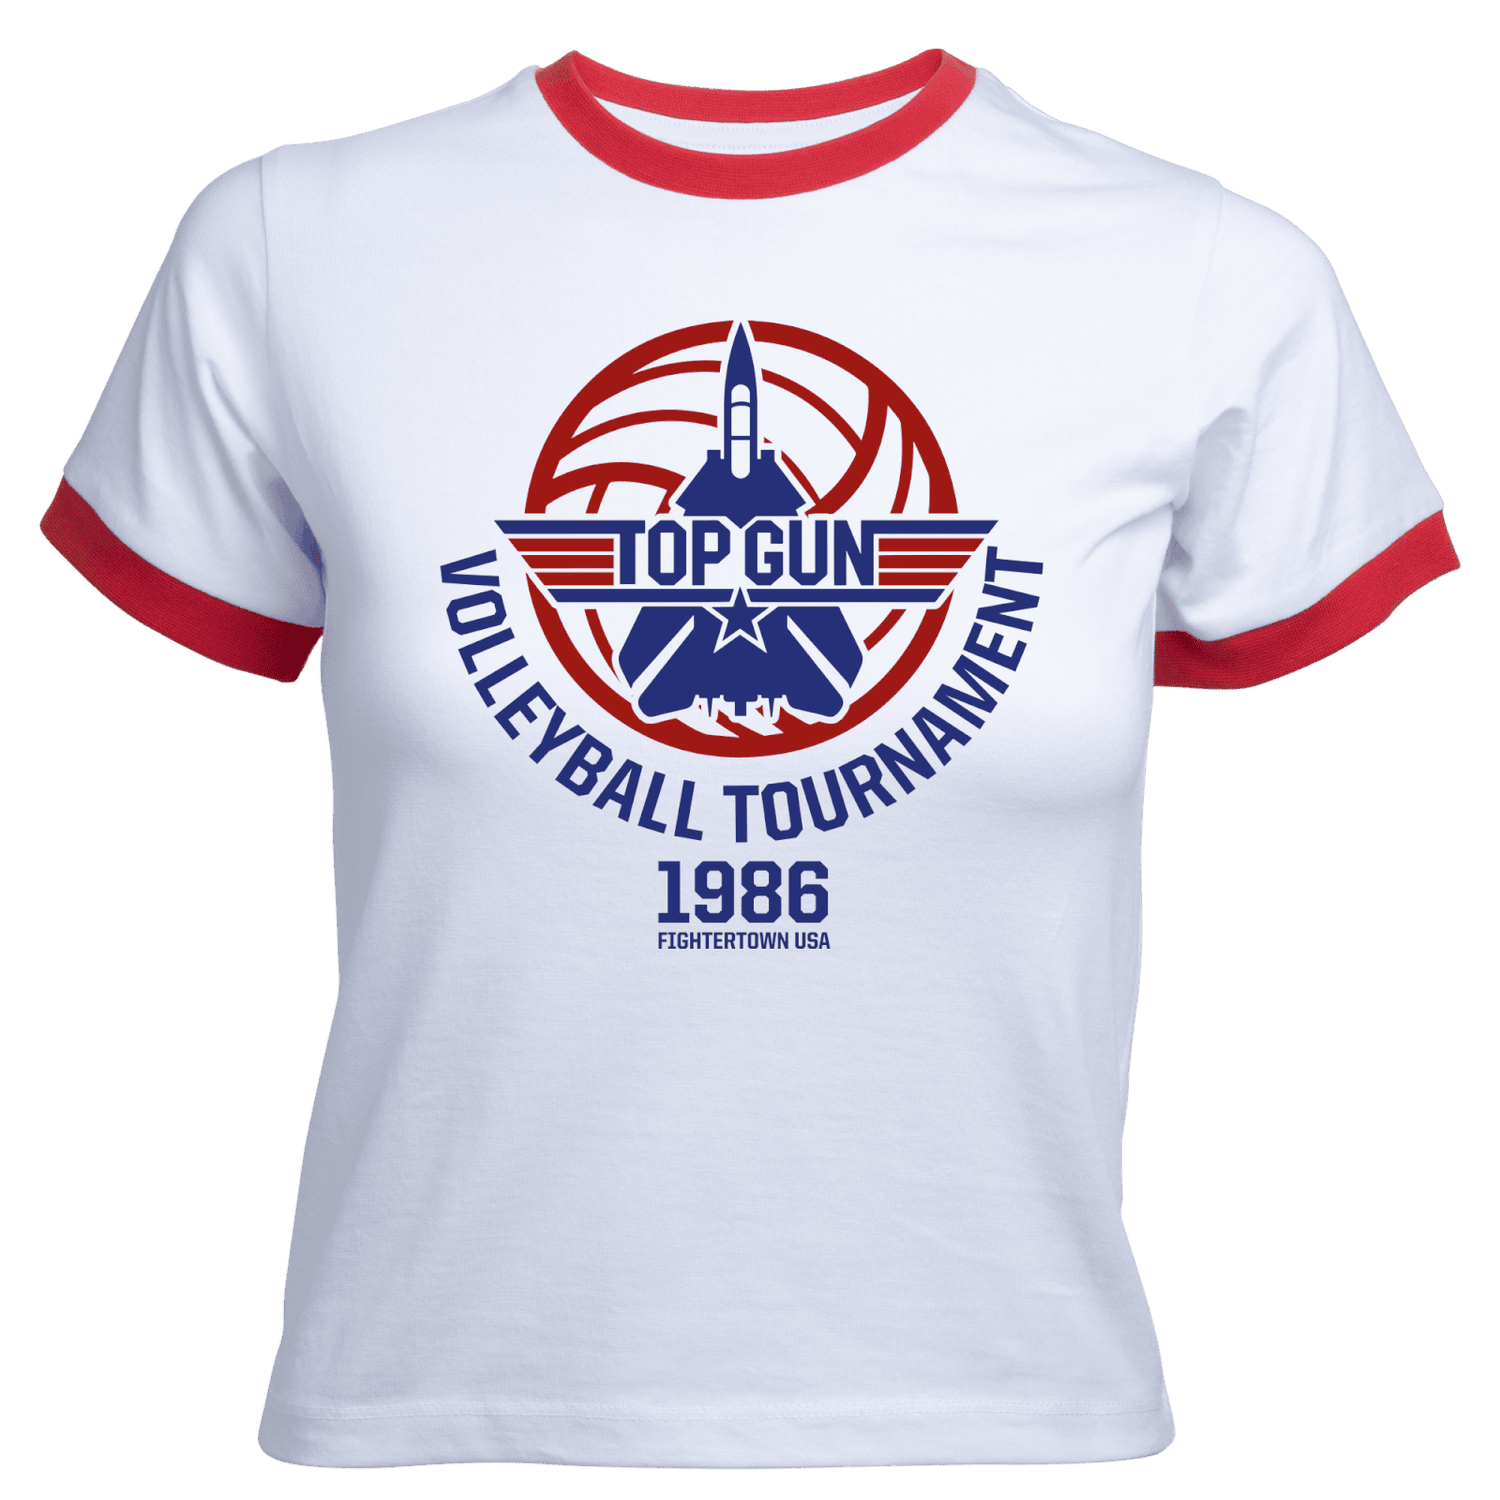 Camiseta de tirantes corta Volleyball Tournament para mujer de Top Gun - Blanco Rojo